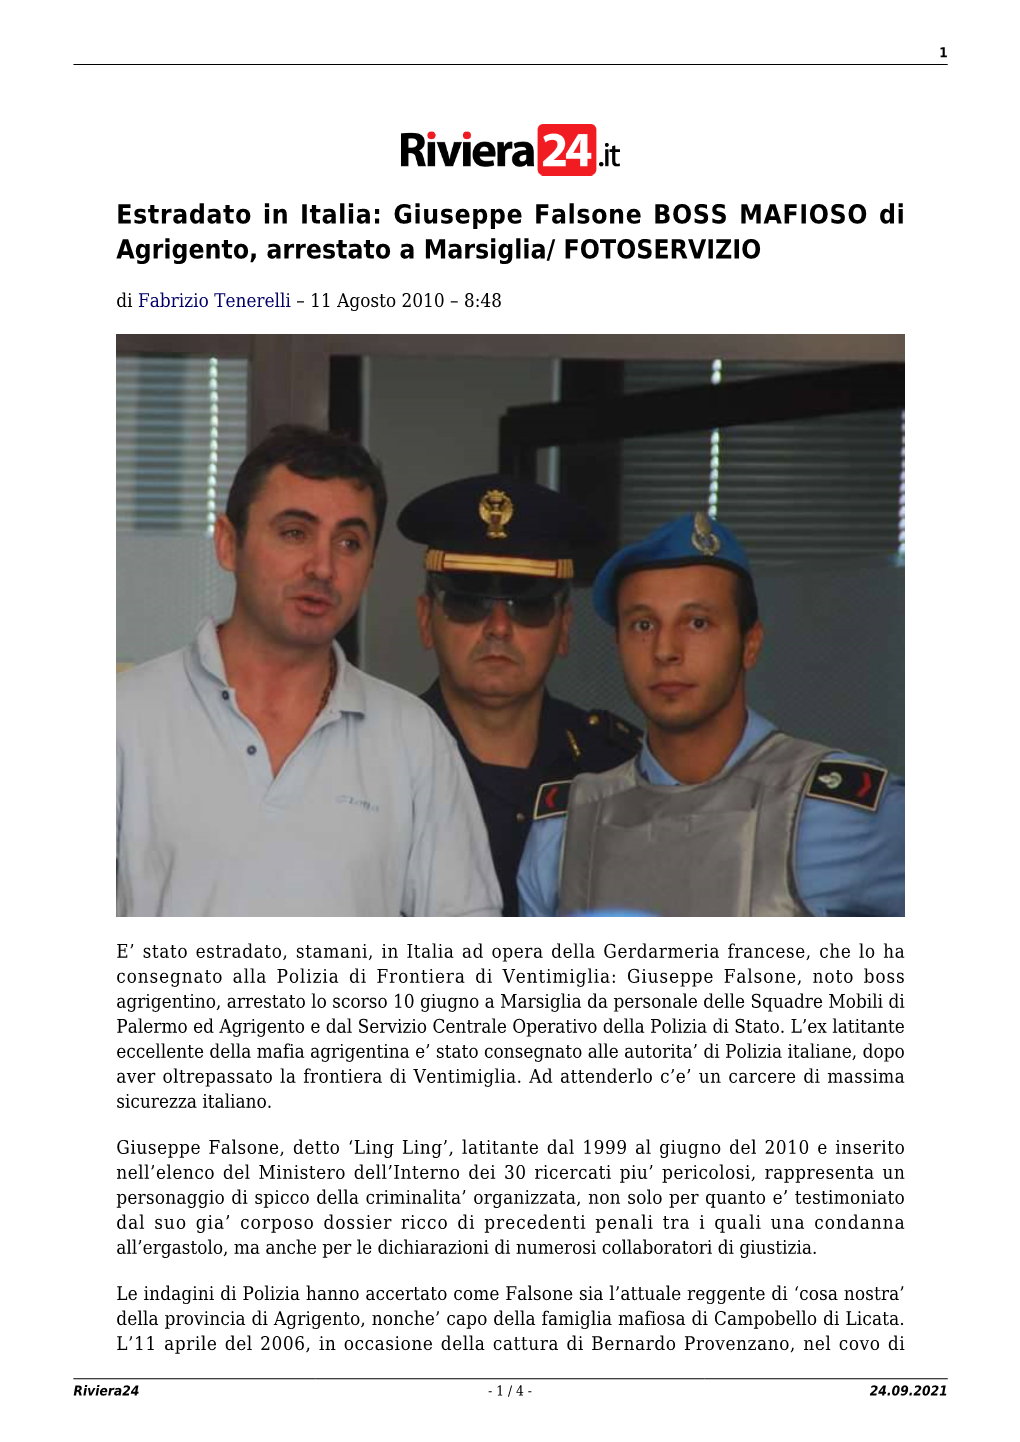 Giuseppe Falsone BOSS MAFIOSO Di Agrigento, Arrestato a Marsiglia/ FOTOSERVIZIO